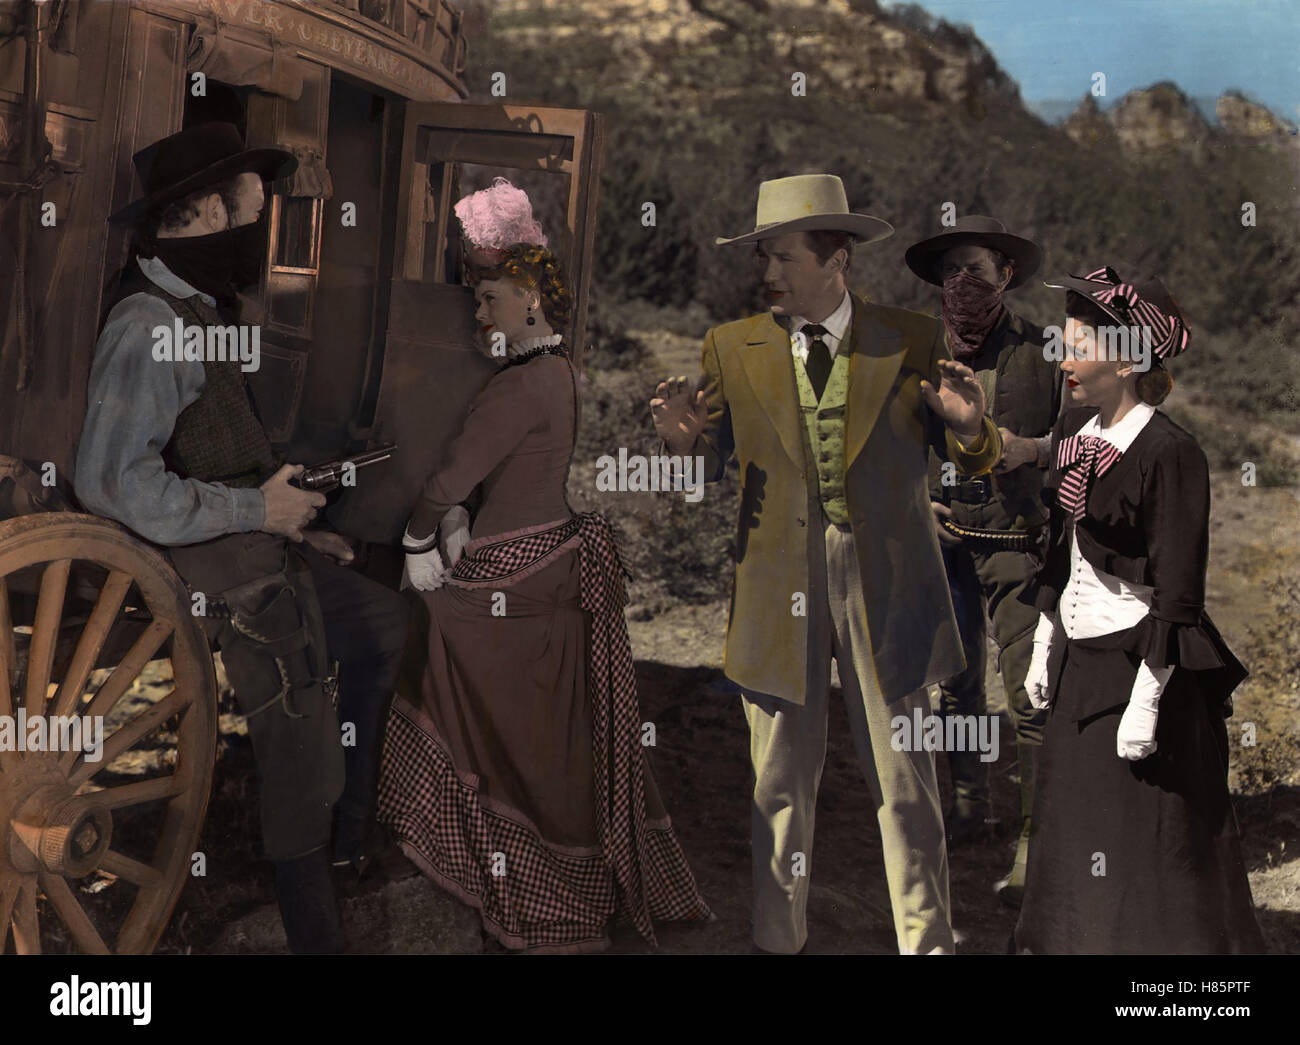 Wyoming-Express, (CHEYENNE - THE WYOMING KID) USA 1947, Regie: Raoul Walsh, JANIS PAIGE, DENNIS MORGAN, JANE WYMAN, Stichwort: Überfall, Hände hoch, Pistole, Postkutsche Stock Photo